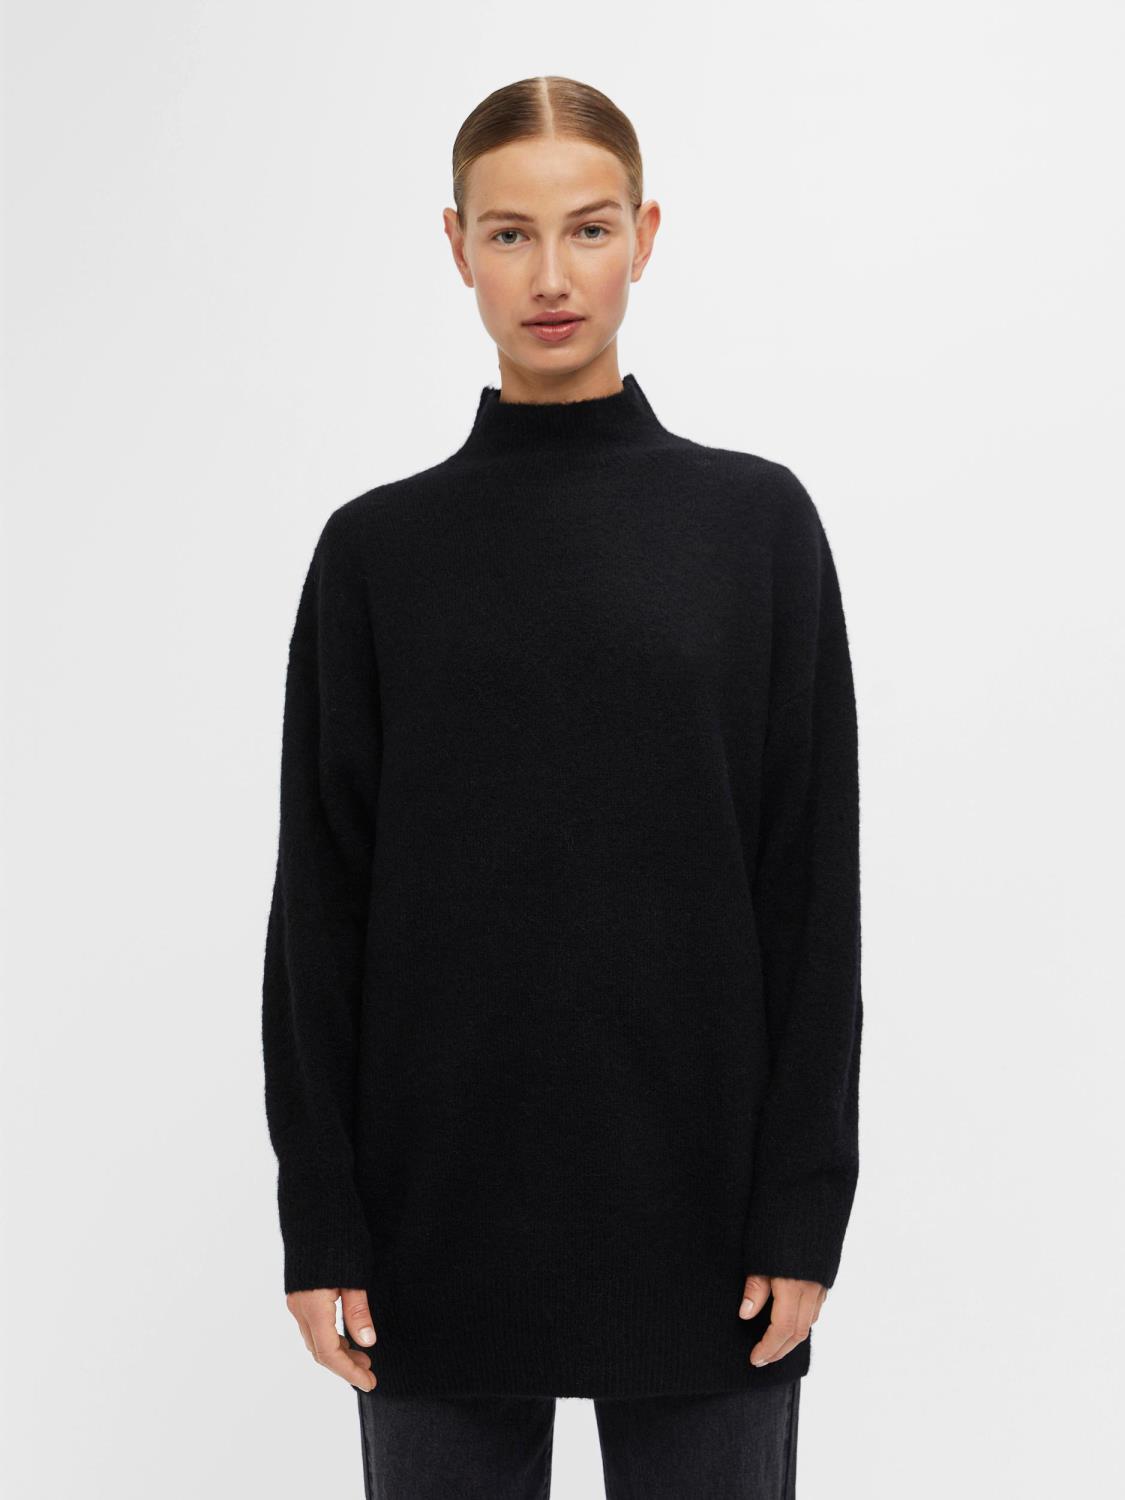 OBJELLIE l/s knit tunic Black